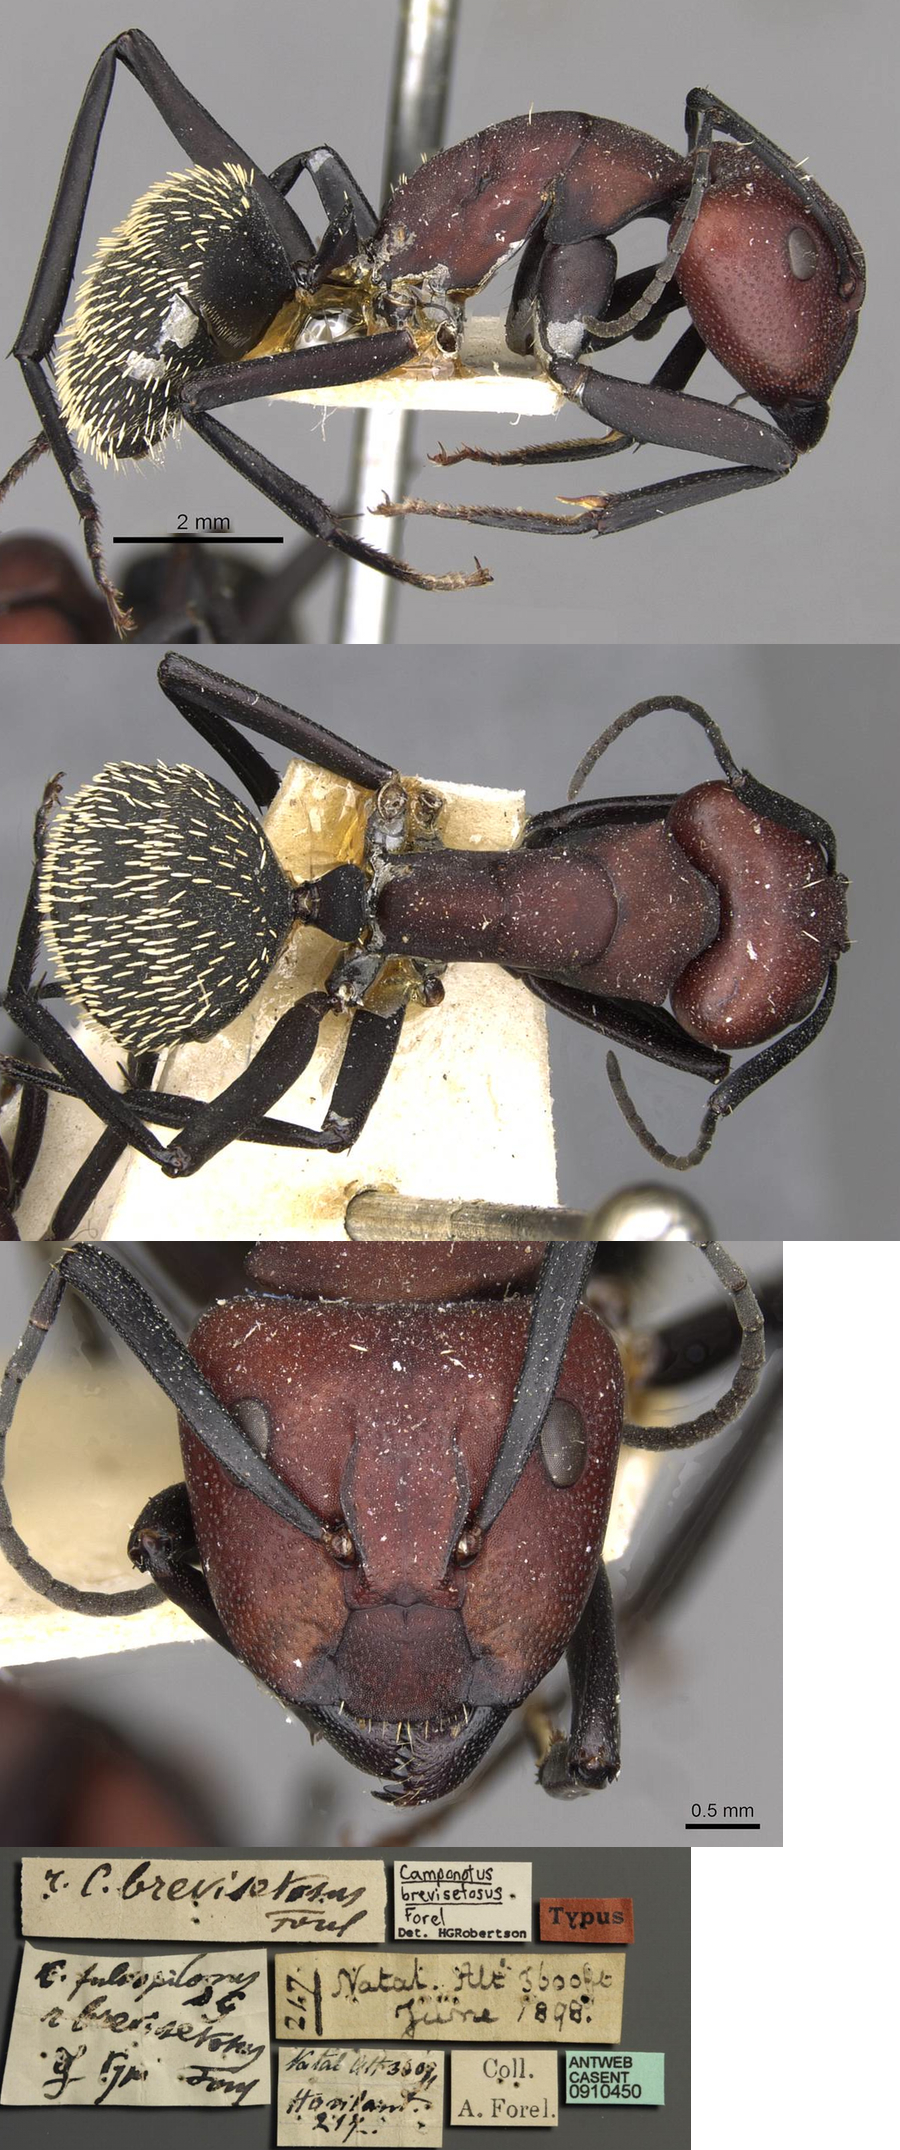 {Camponotus brevisetosus major}